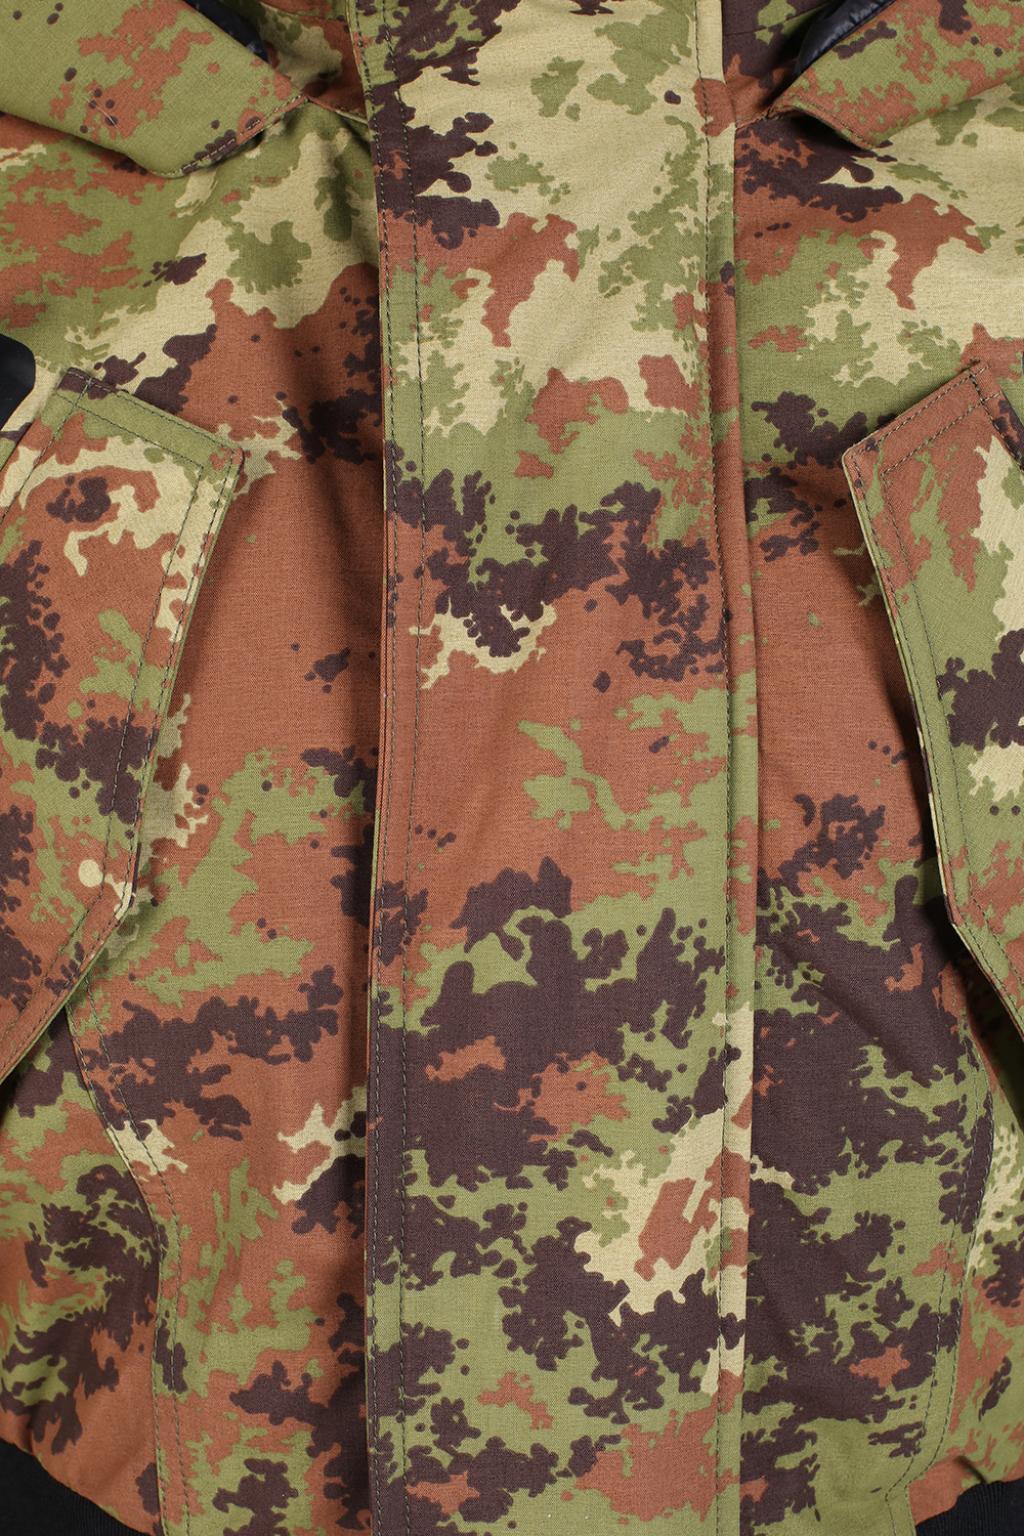 dsquared2 camouflage jacket